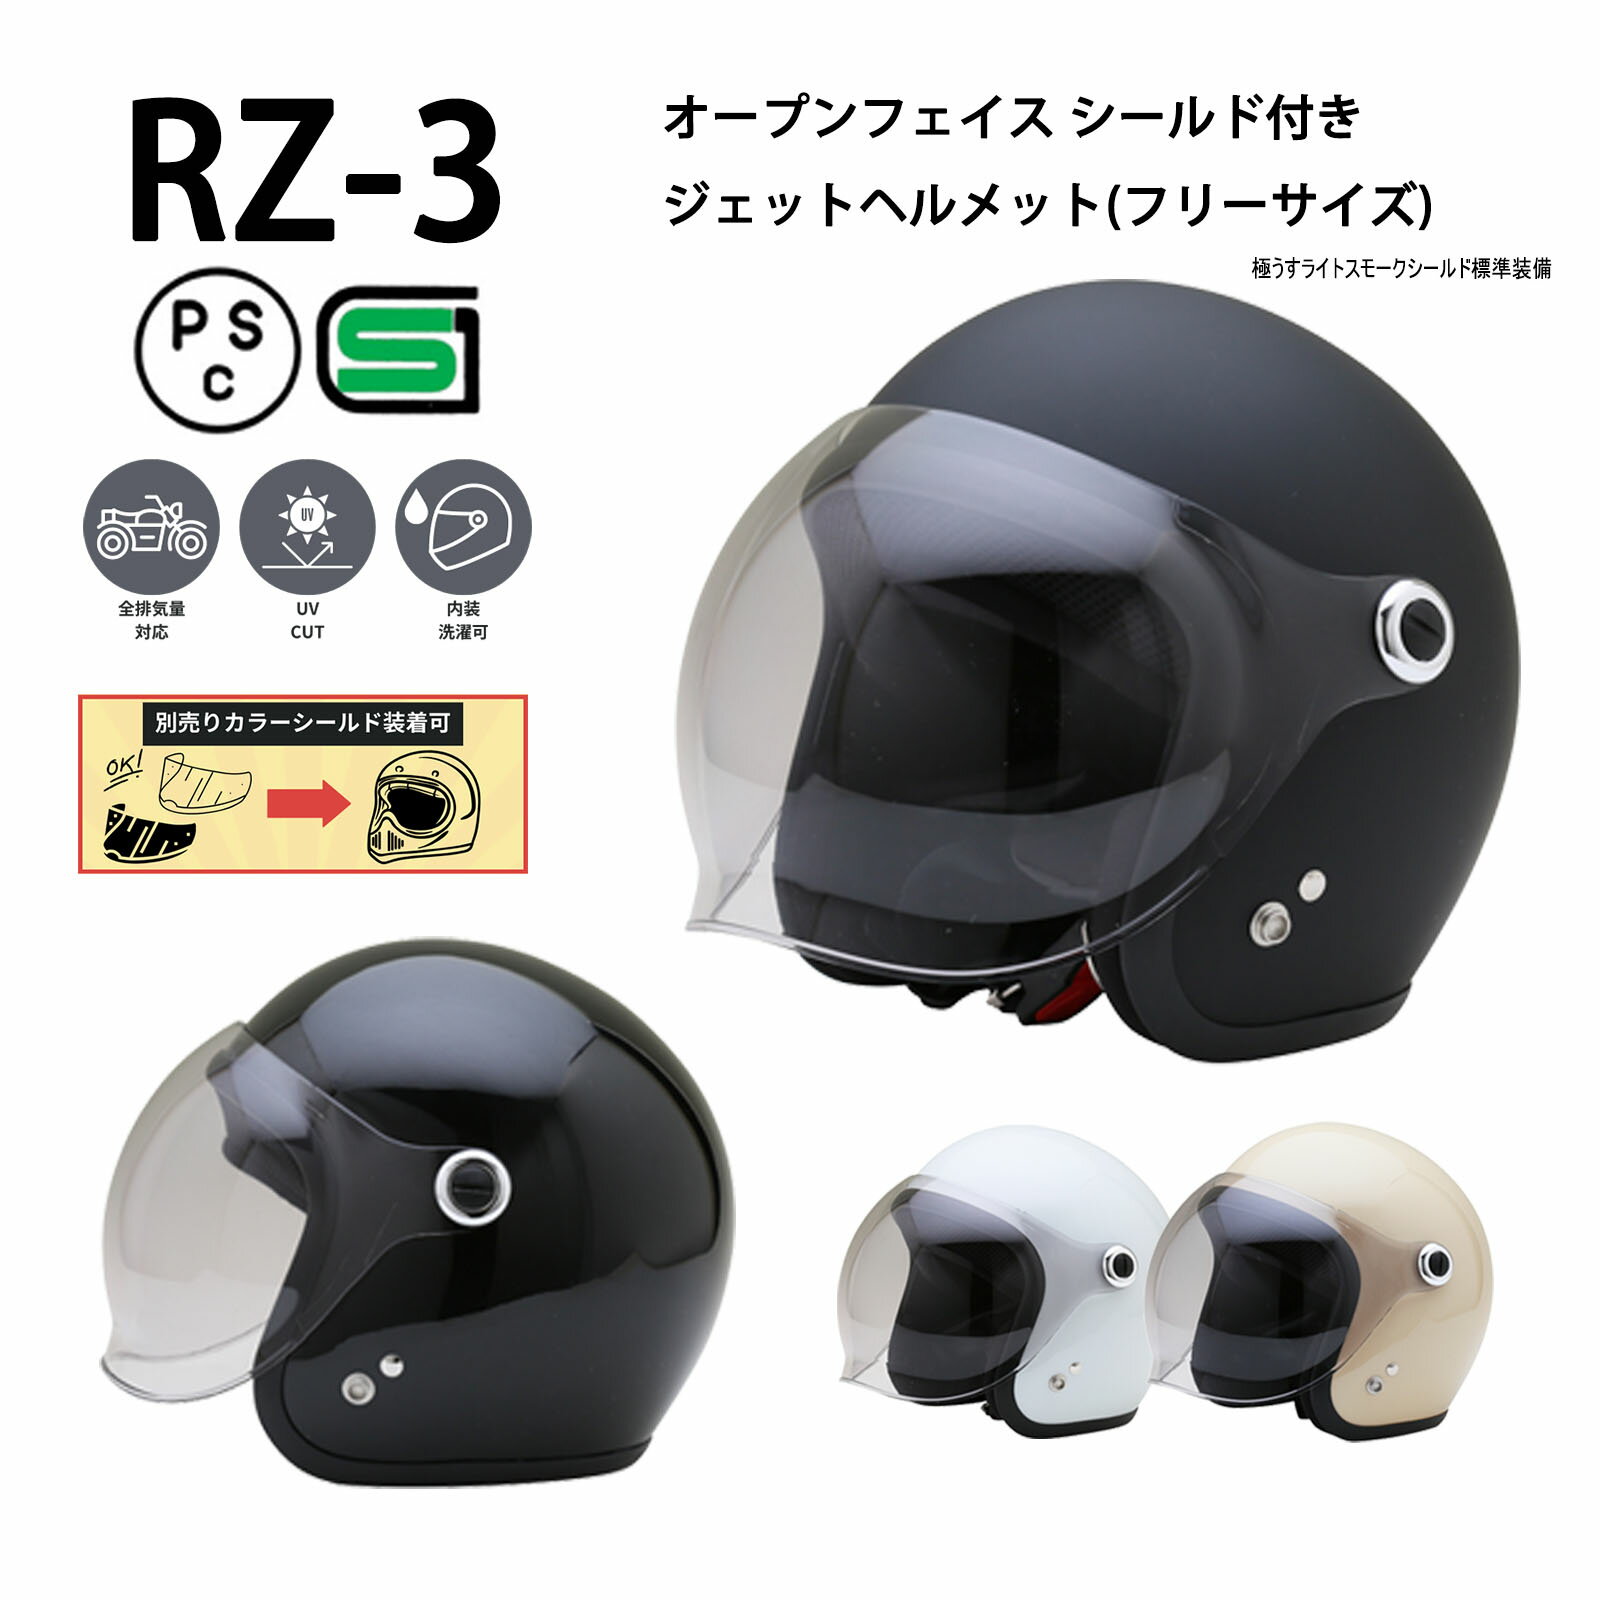 RZ-3 【送料無料】全4色★シールド付ジェットヘルメット (SG/PSC付) スモールジェット 眼鏡 メガネ スリット入り NEOR…